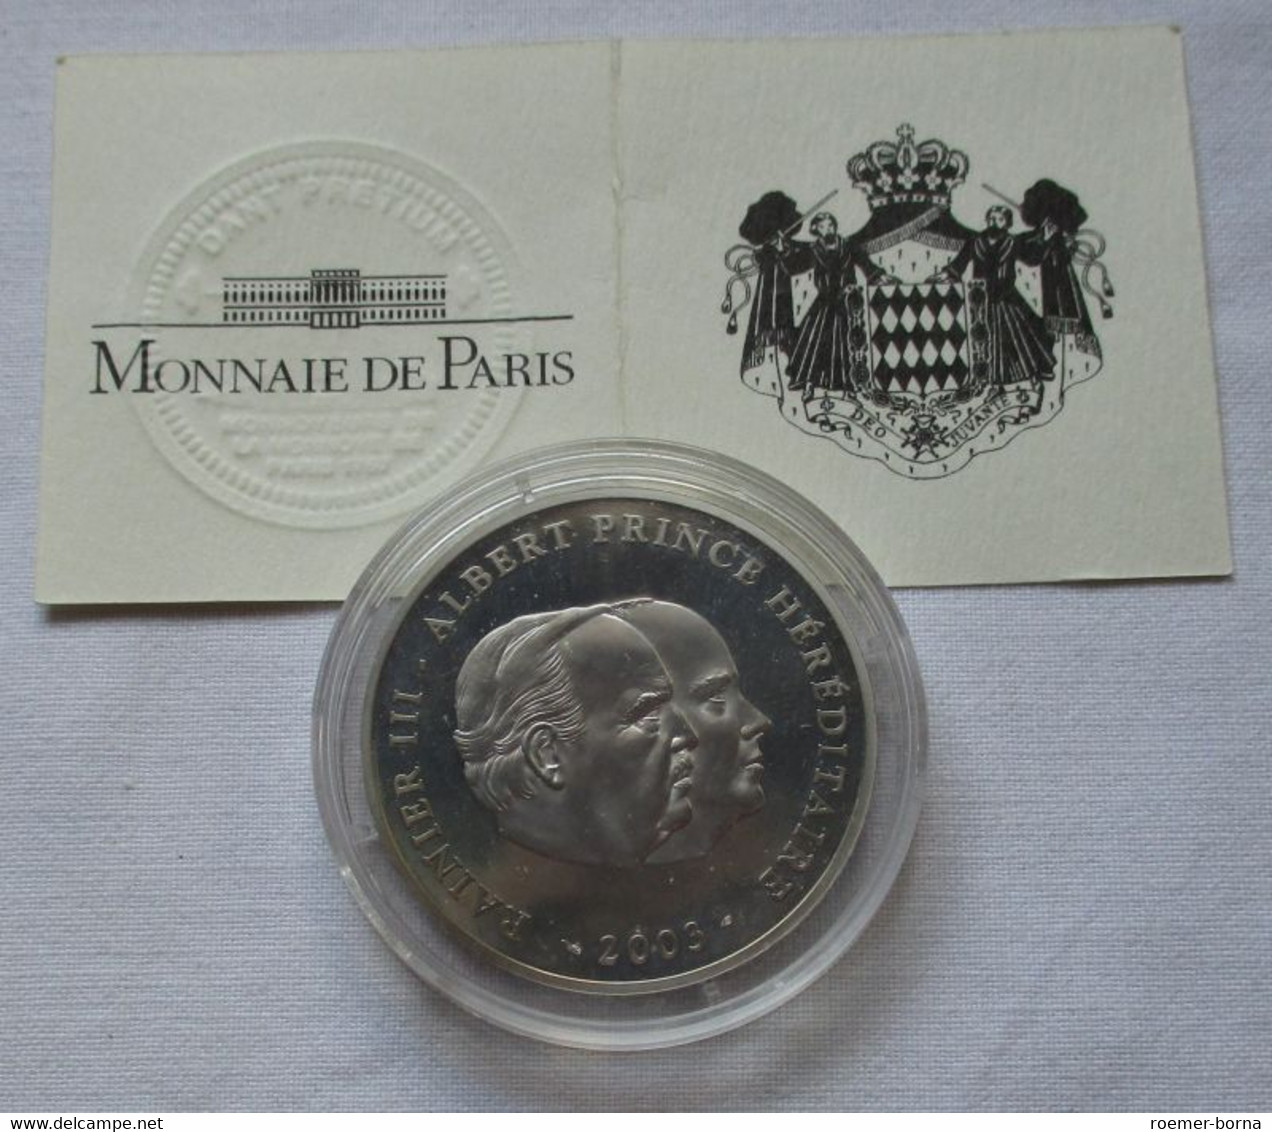 10 Euro Monaco 2003 PP '80.Geburtstag Fürst Rainier III' Box/Zertifikat (134670) - Monaco